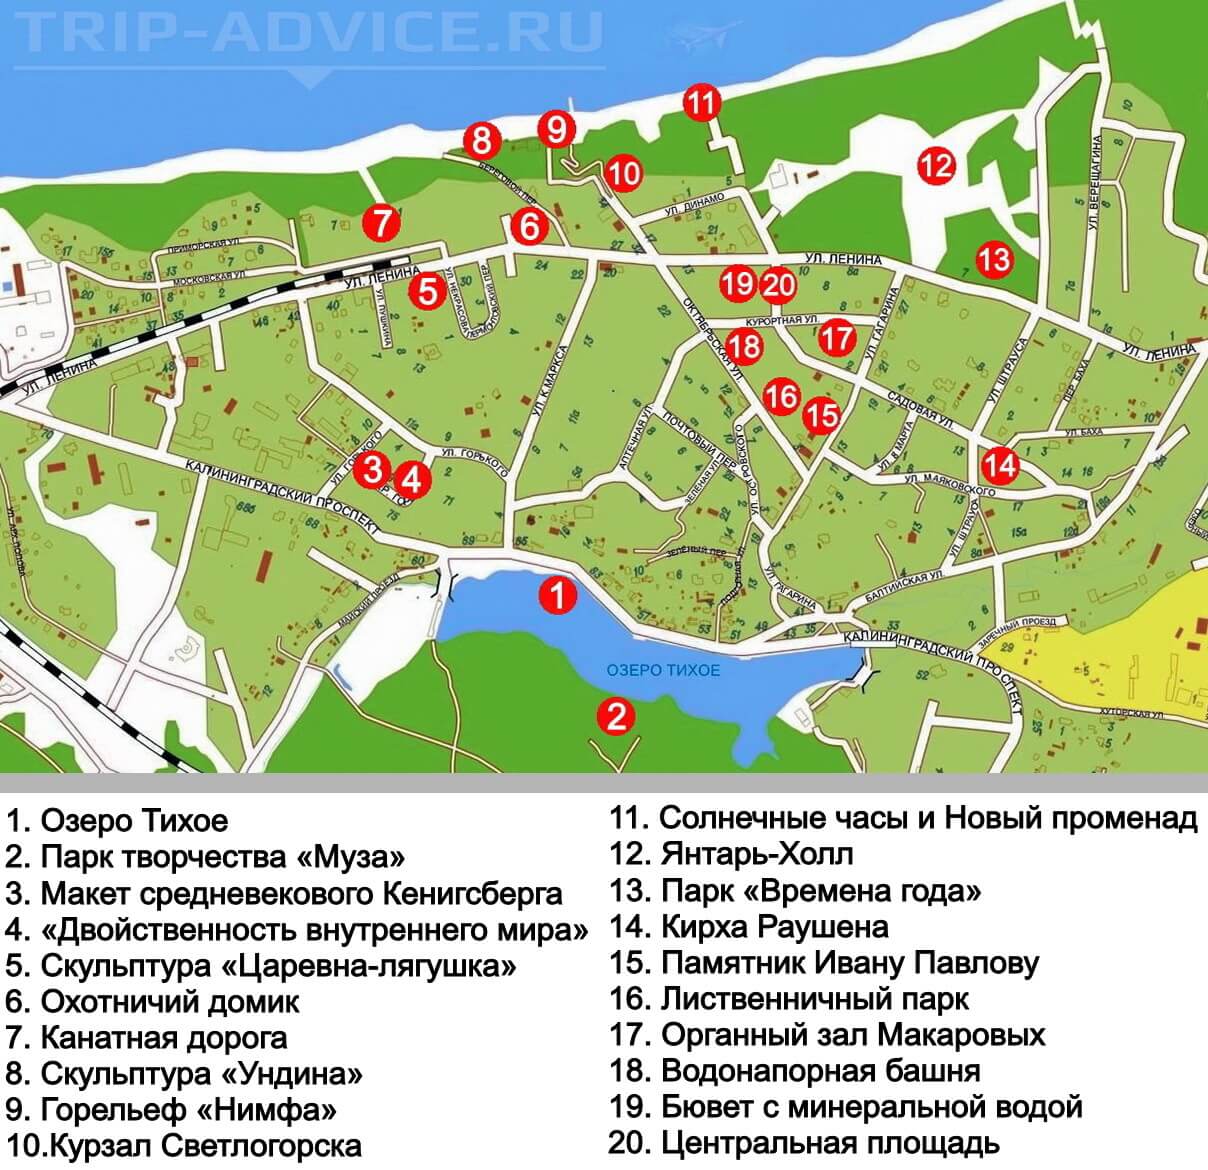 Что посмотреть в калининграде за 5 дней — маршруты по достопримечательностям , фото, советы, отзывы туристов на туристер.ру